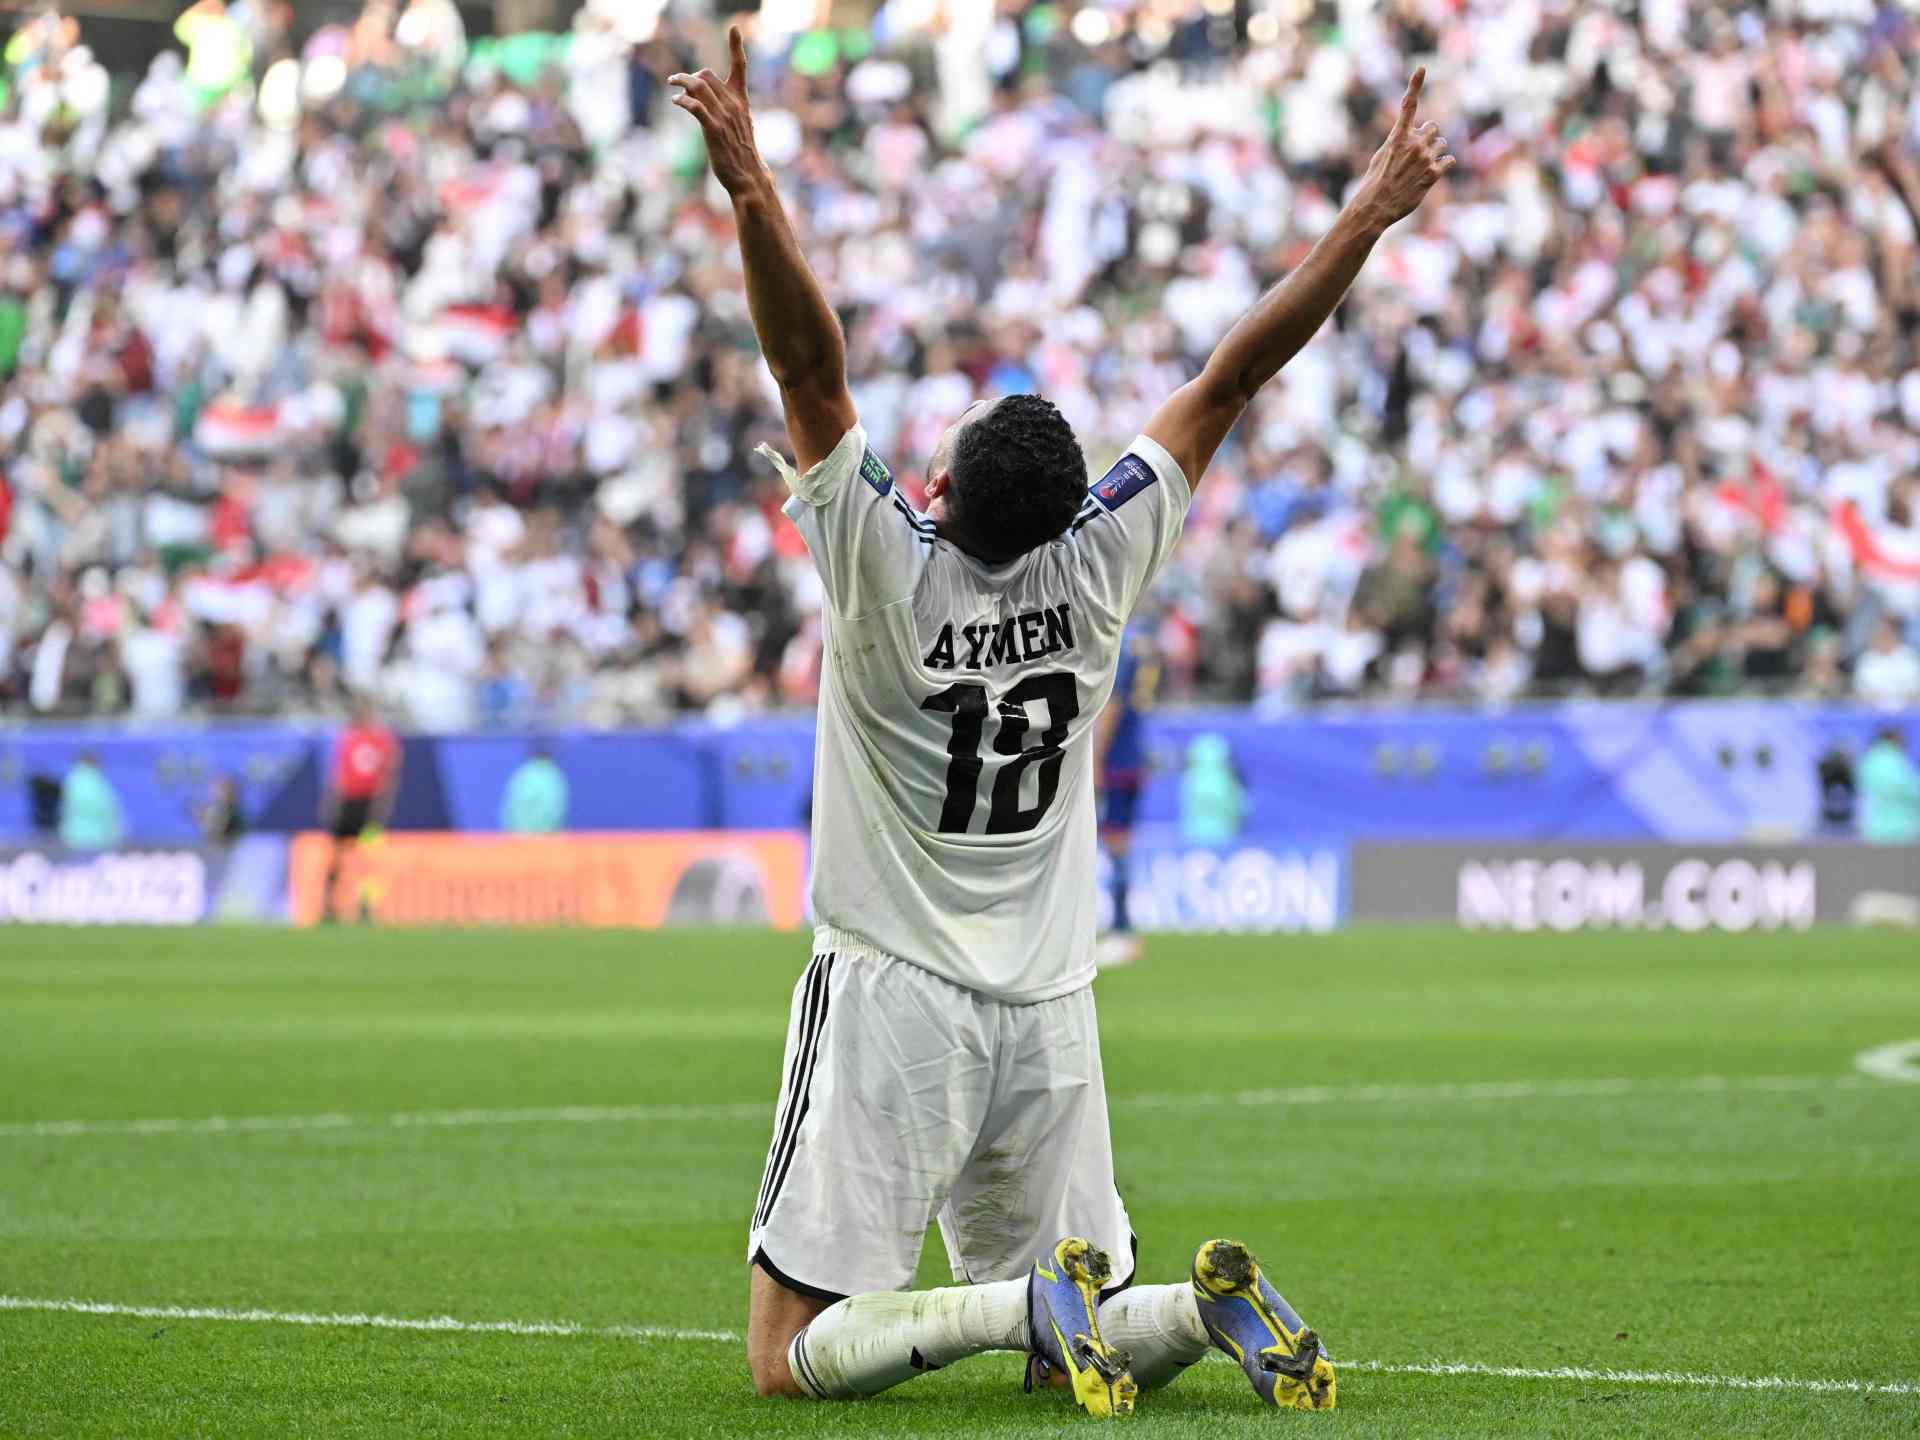 أيمن حسين يقود العراق لفوز تاريخي على اليابان والتأهل لثمن نهائي كأس آسيا | رياضة – البوكس نيوز